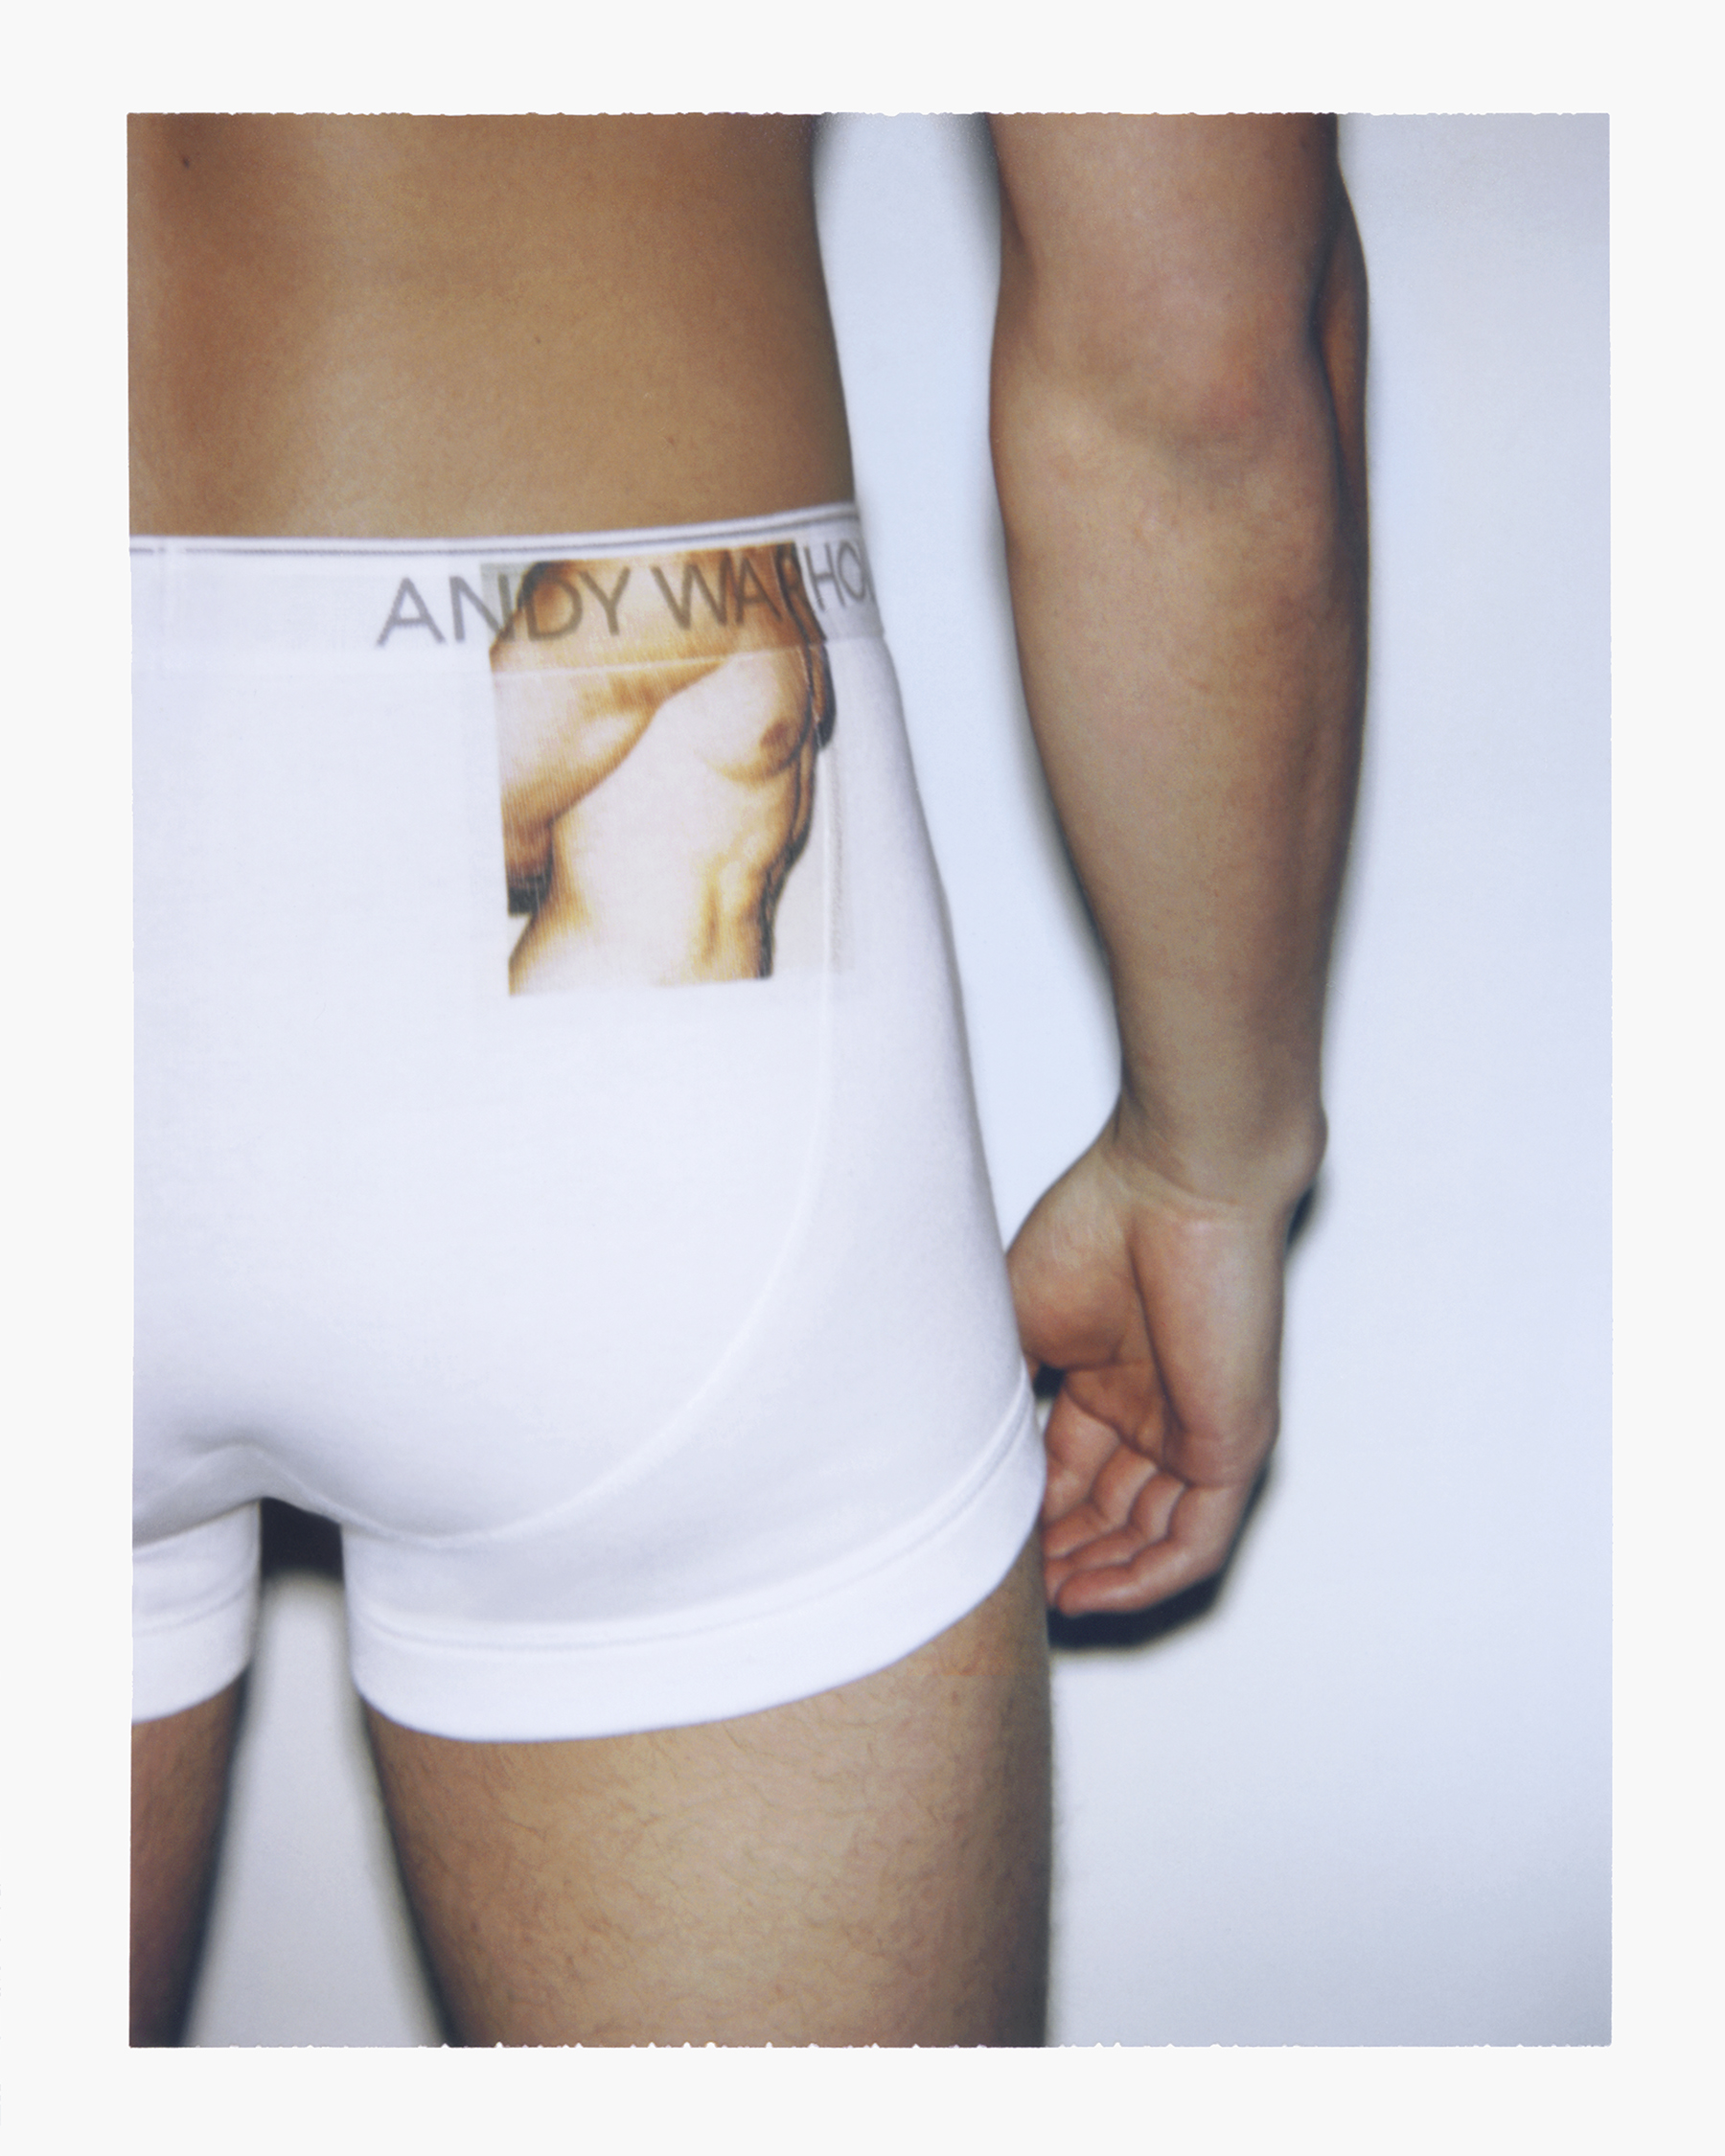 calvin klein andy warhol underwear